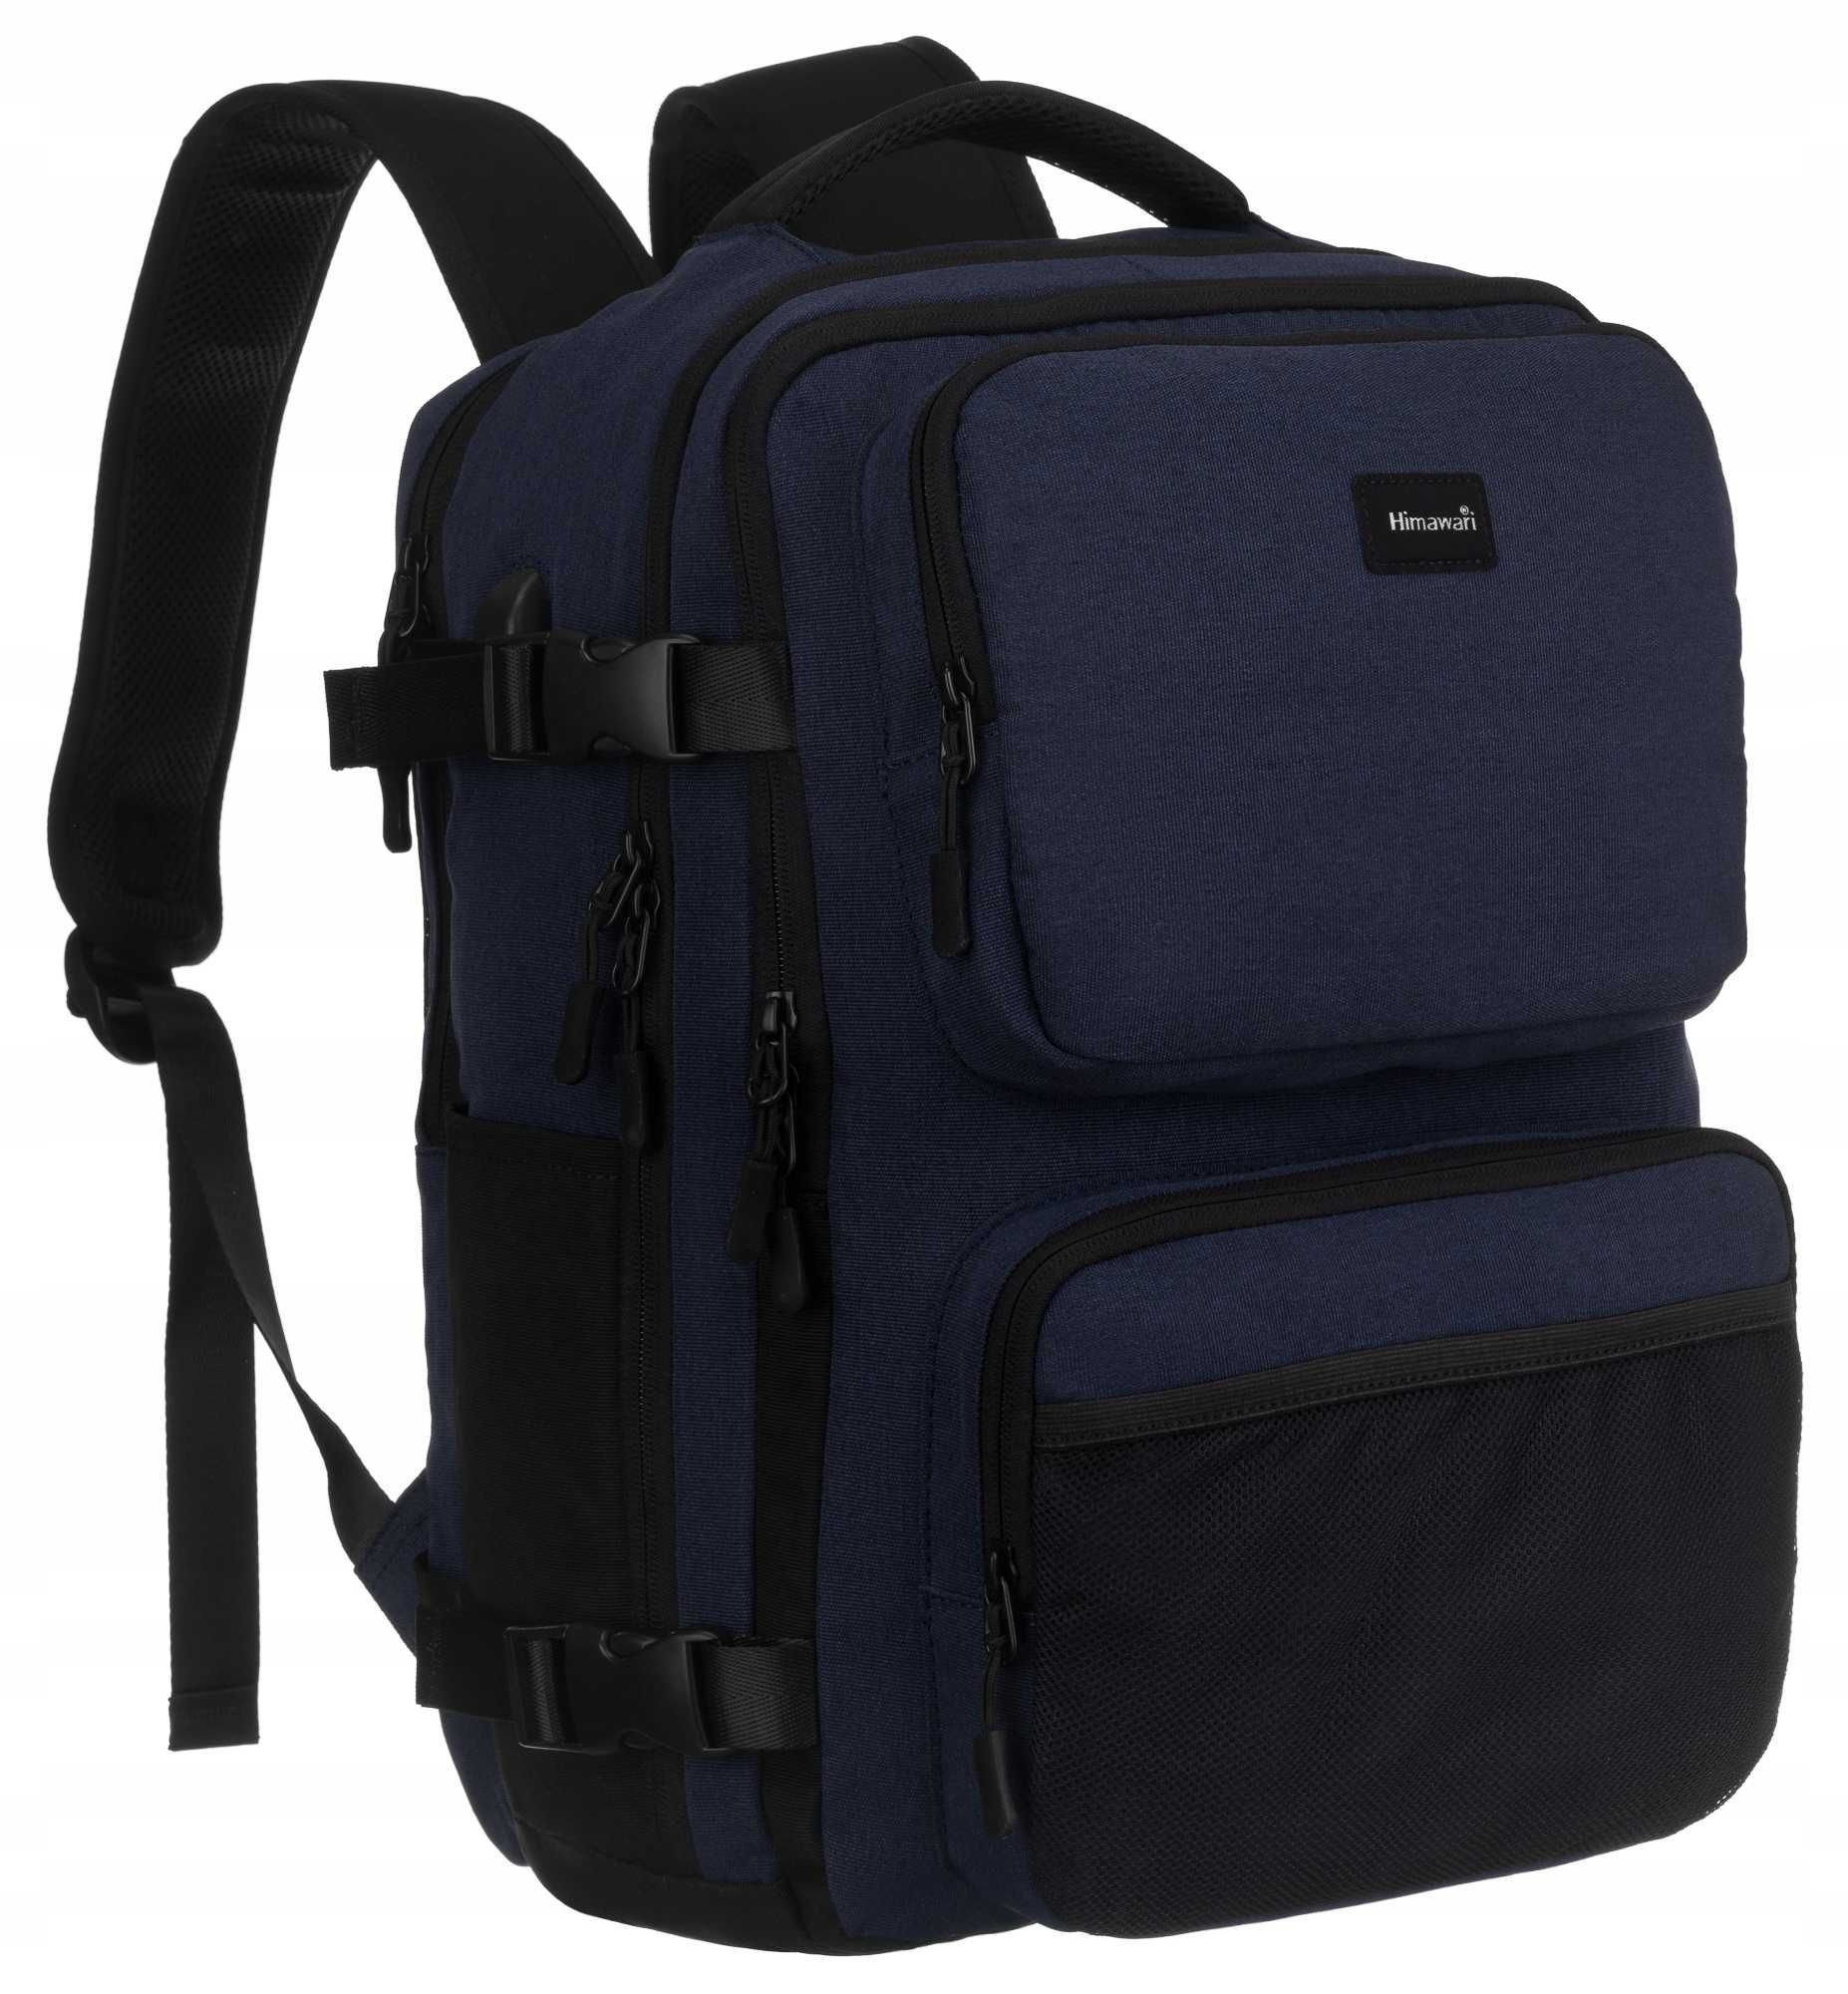 HIMAWARI pojemny plecak podróżny bagaż podręczny na laptop granatowy